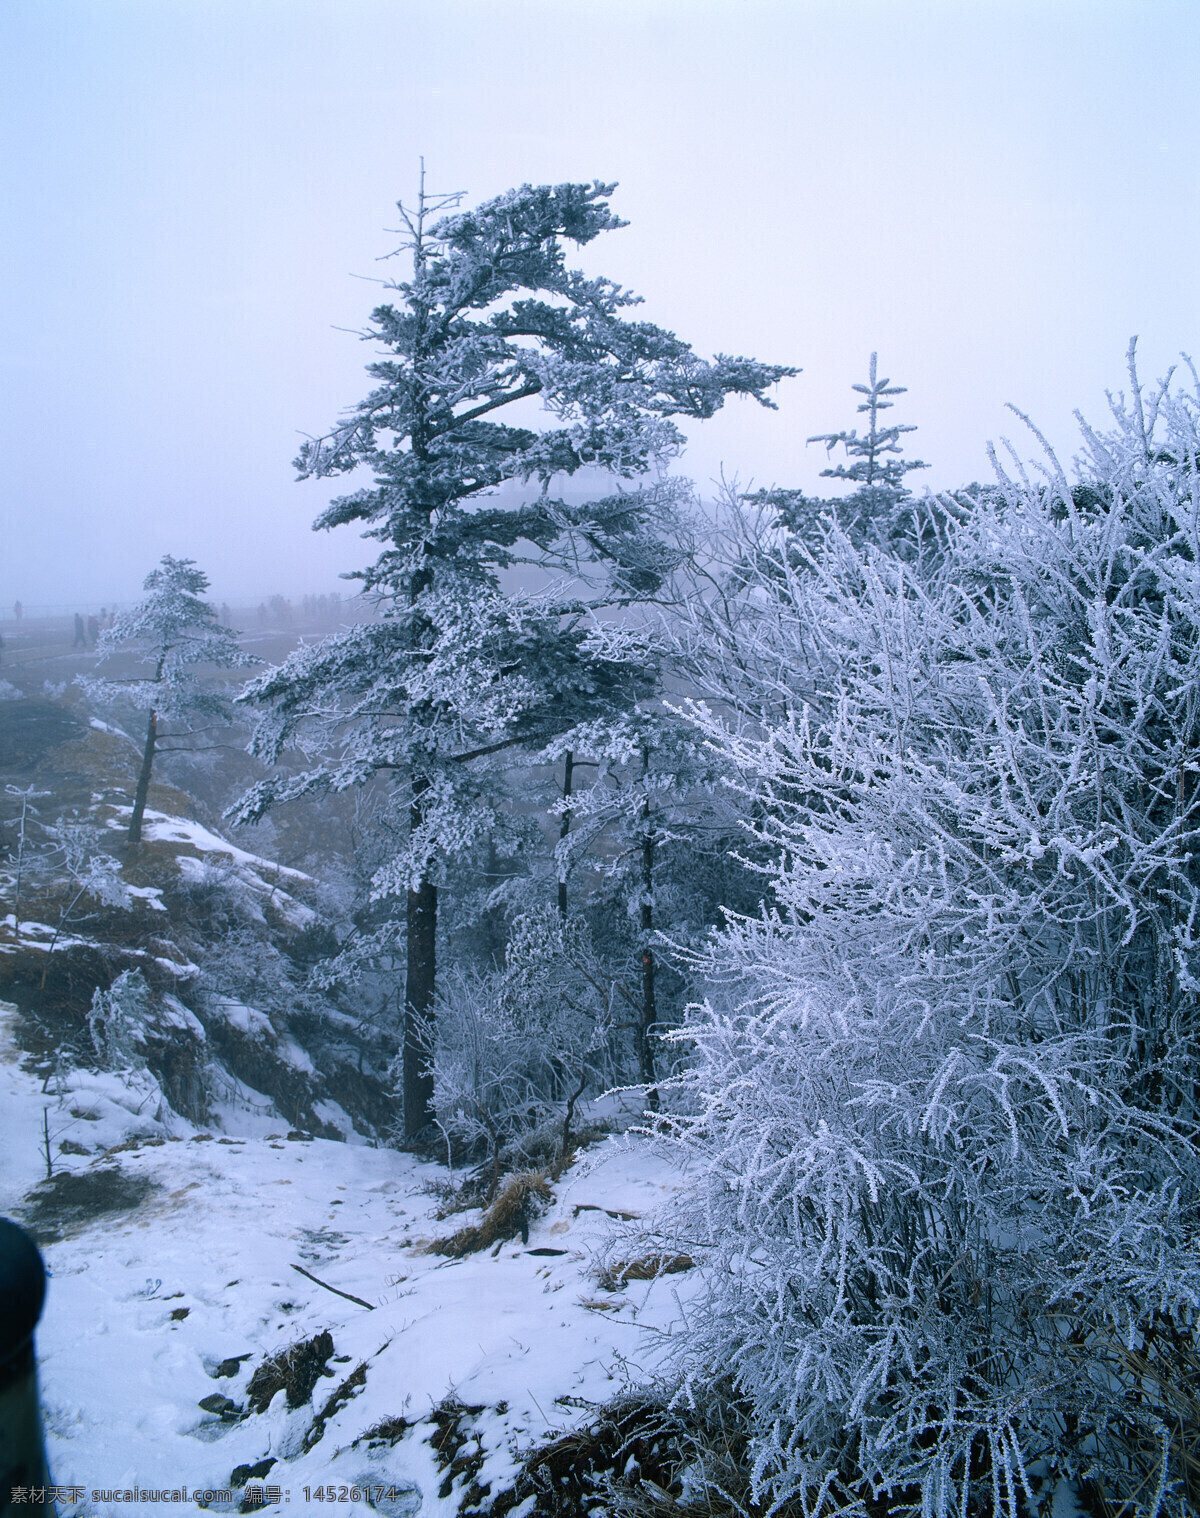 冬天 雪景 大自然 自然风景 美丽风景 美景 景色 风景摄影 旅游景区 旅游风景 旅游奇观 雪地 冬天风景 冬季雪景 冬季树木 雪景图片 风景图片